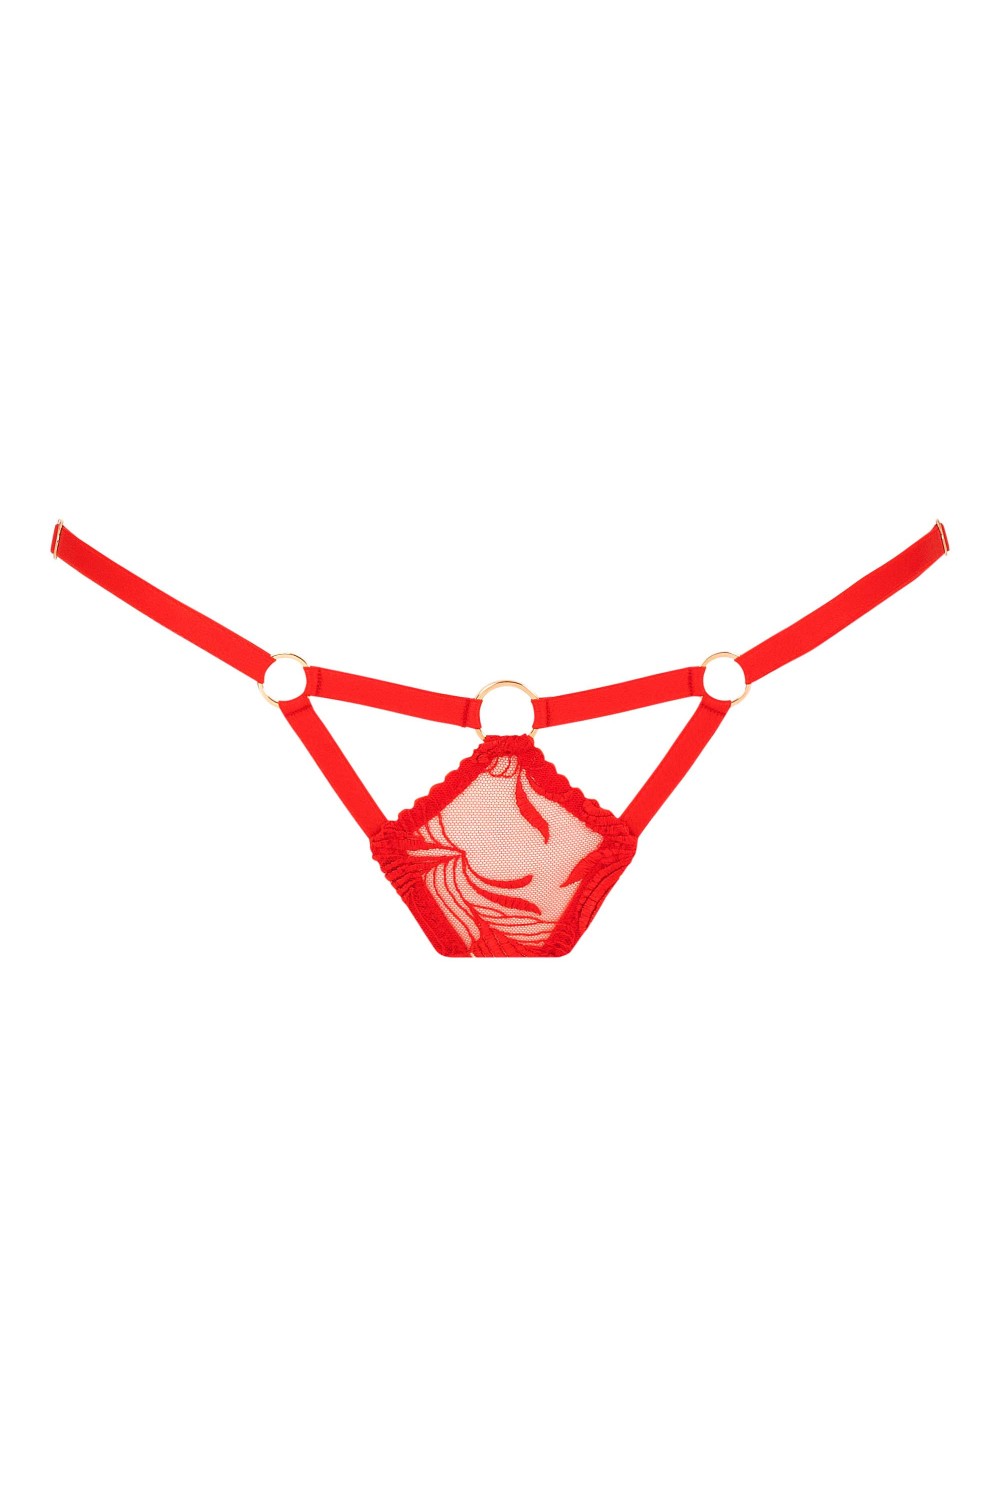 Tabatha culotte rouge - Lingerie de luxe – Impudique Site Officiel